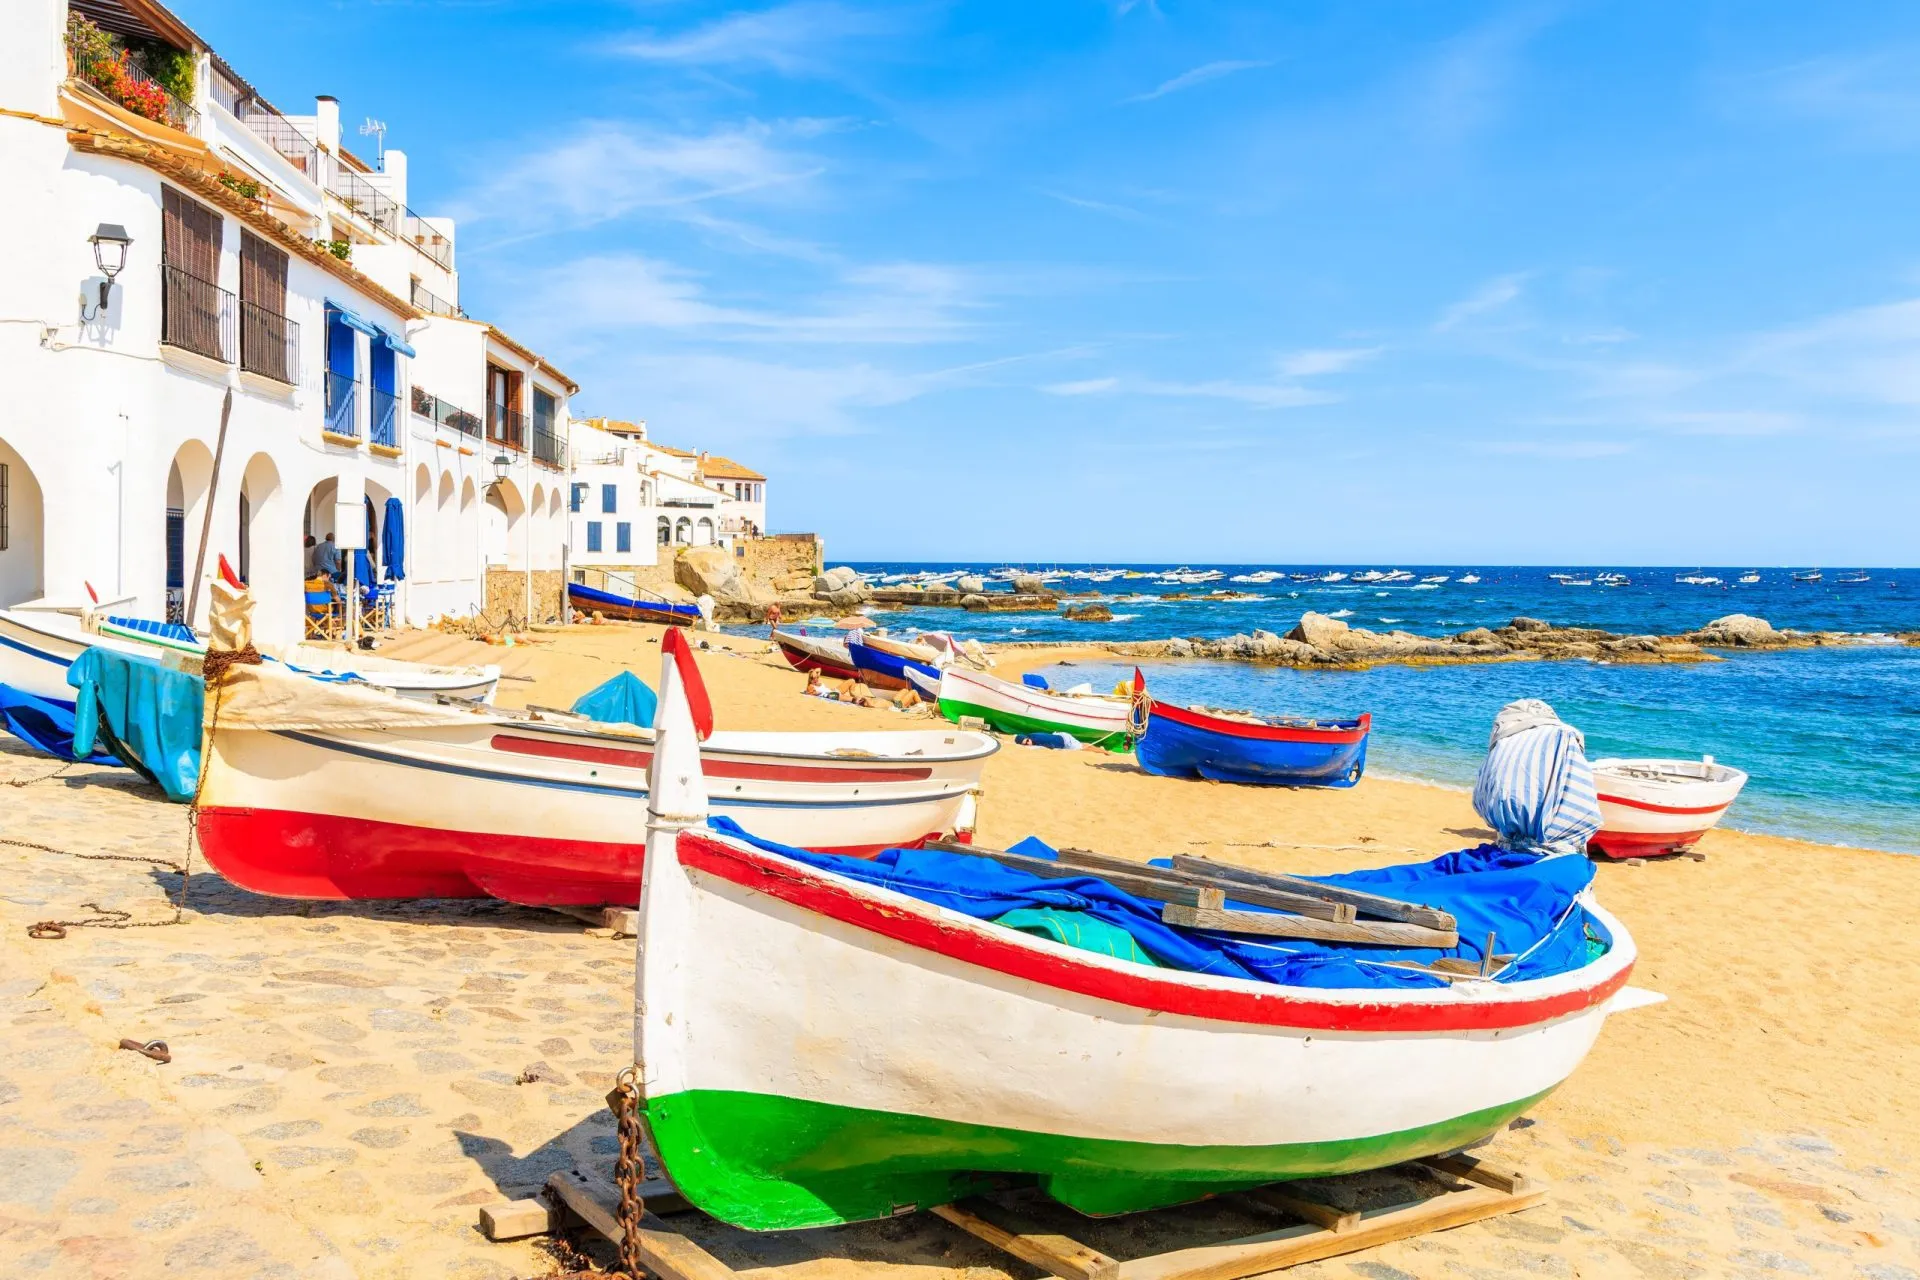 Barche da pesca tradizionali sulla spiaggia di Calella de Palafrugell, paesino panoramico con case bianche e spiaggia sabbiosa con acqua cristallina, Costa Brava, Catalogna, Spagna